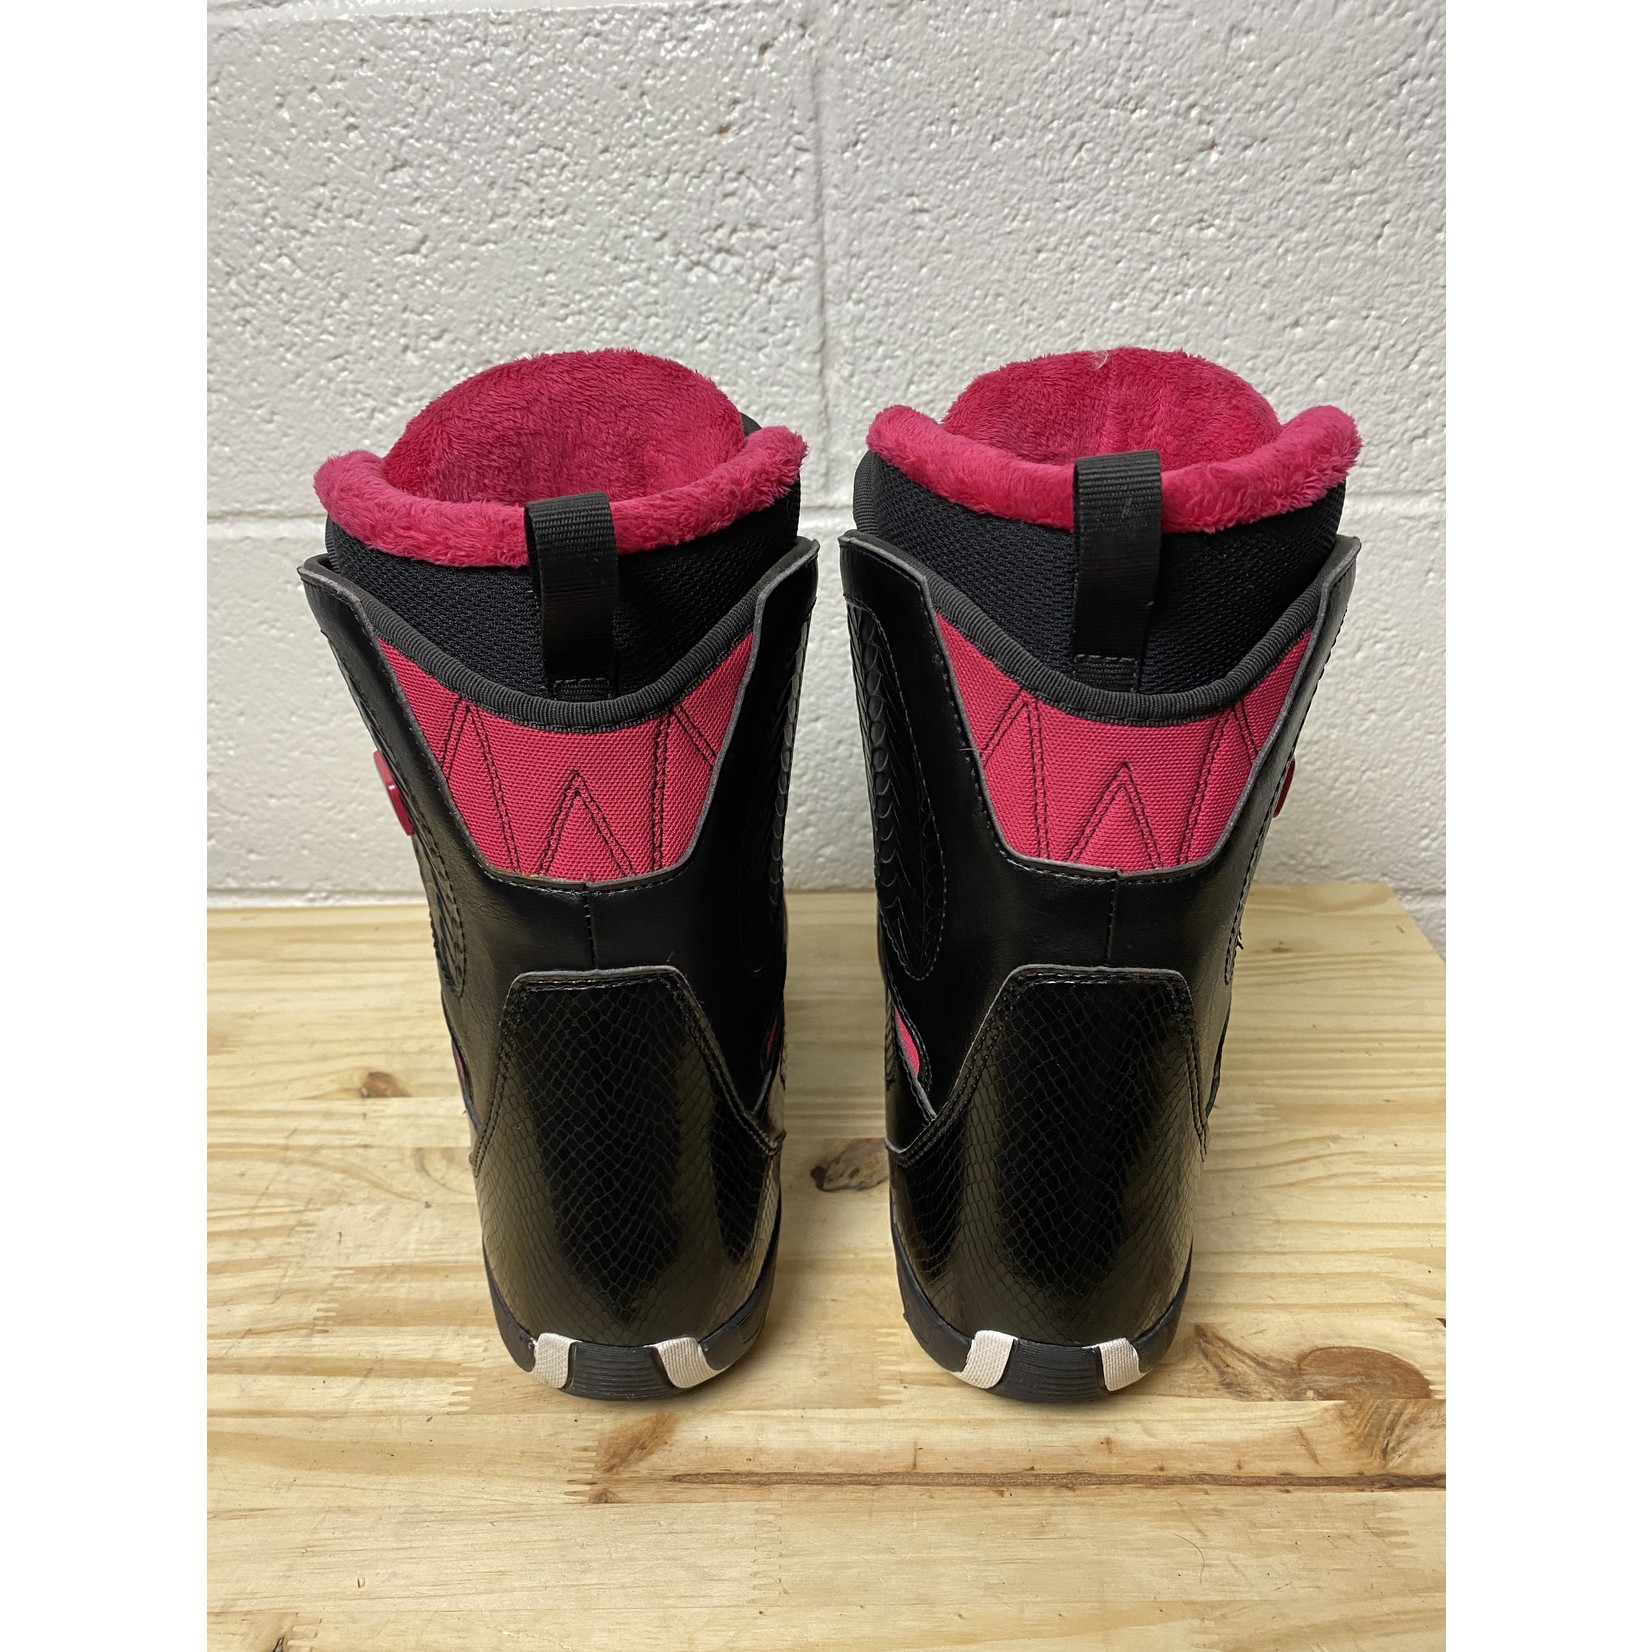 Salomon Salomon Pearl Boa Snowboard Boots - Black/Pink